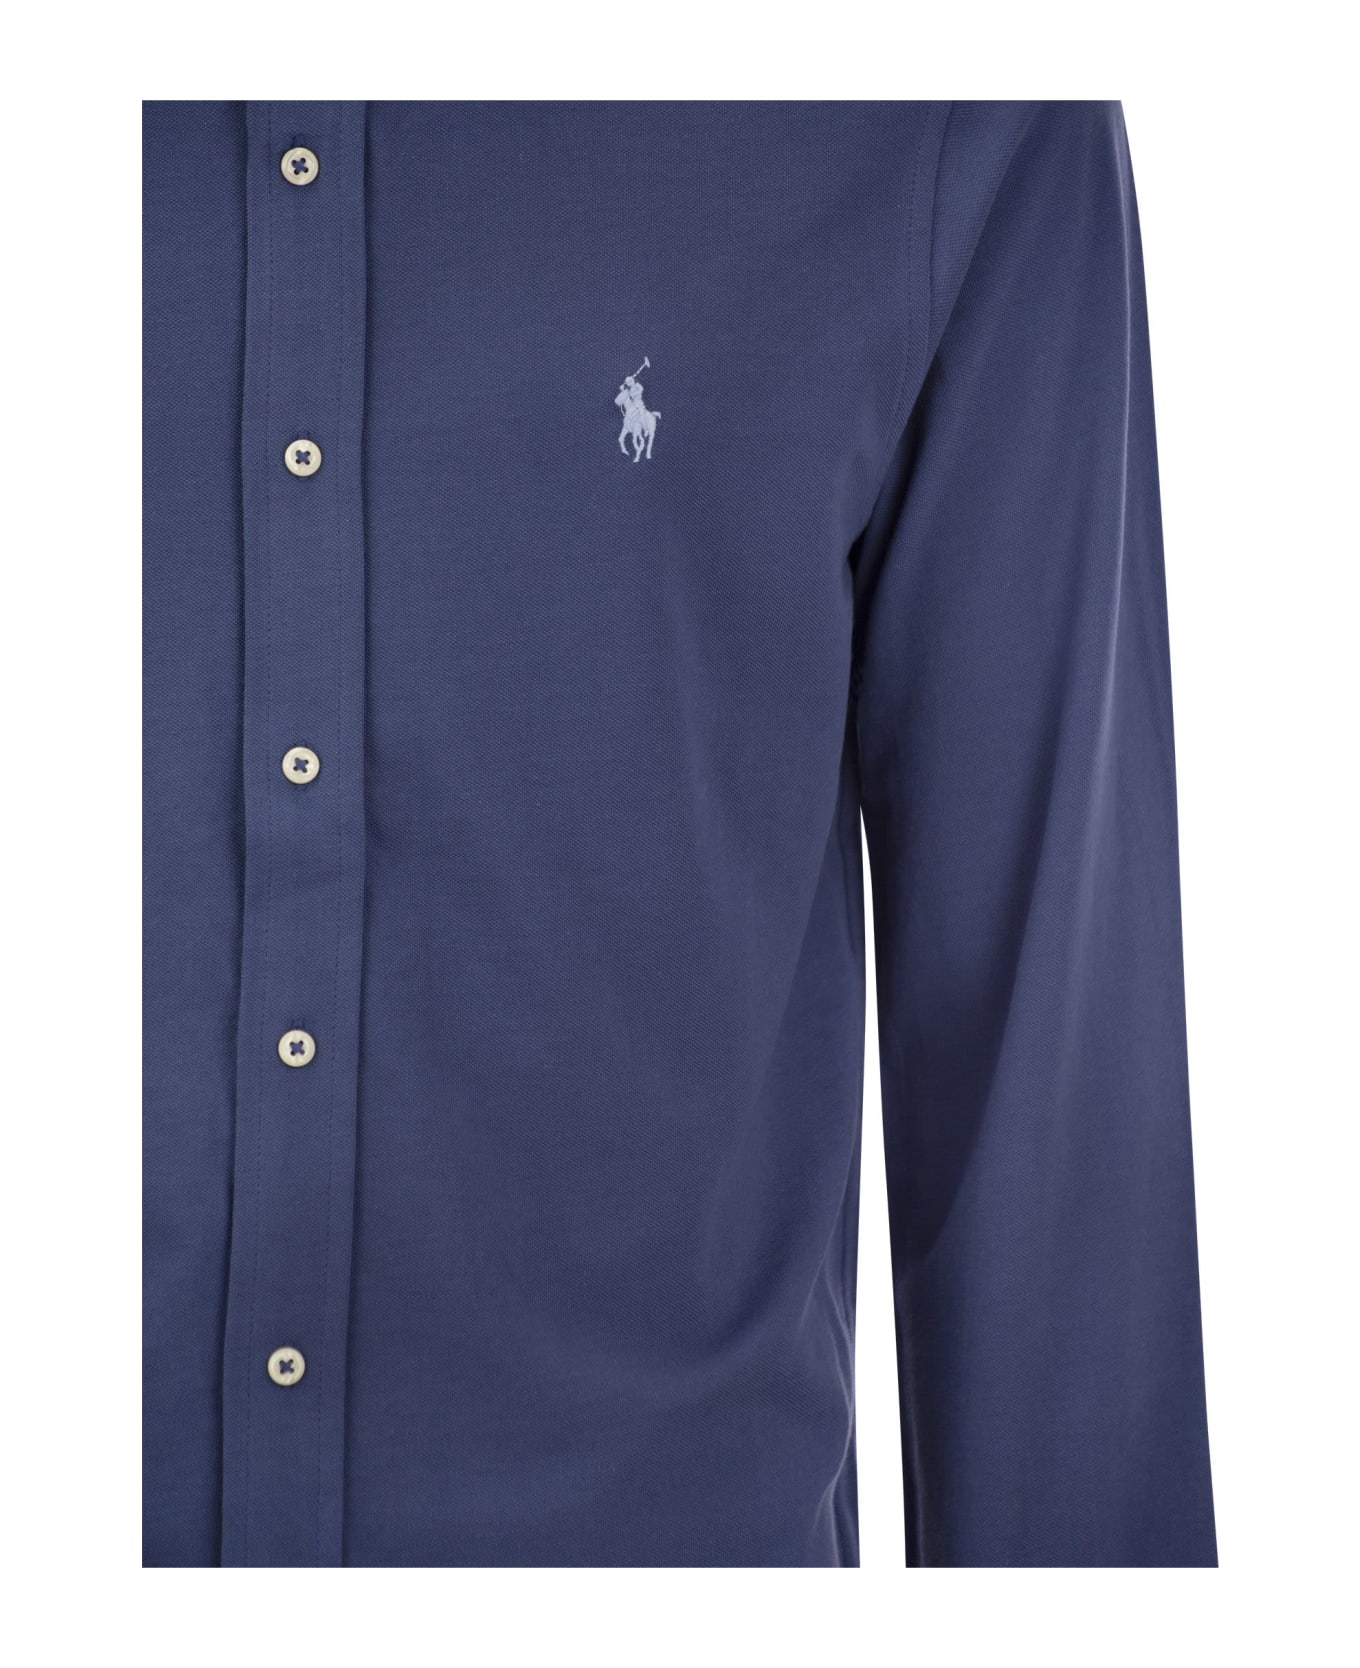 Ralph Lauren Ultralight Pique Shirt - Old royal